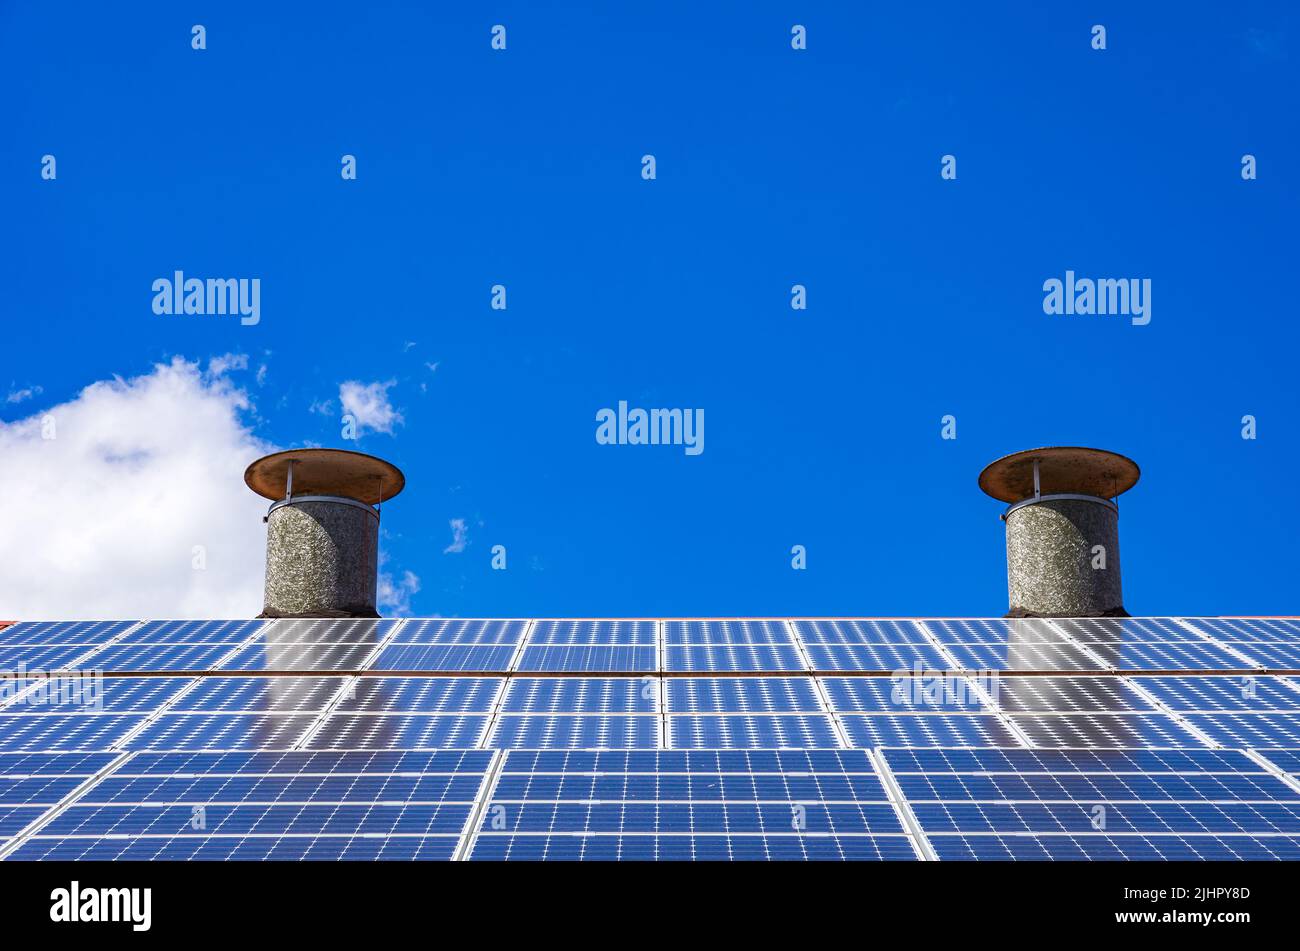 Sistema fotovoltaico doméstico o pequeña planta de energía solar en el techo de una casa. Foto de stock